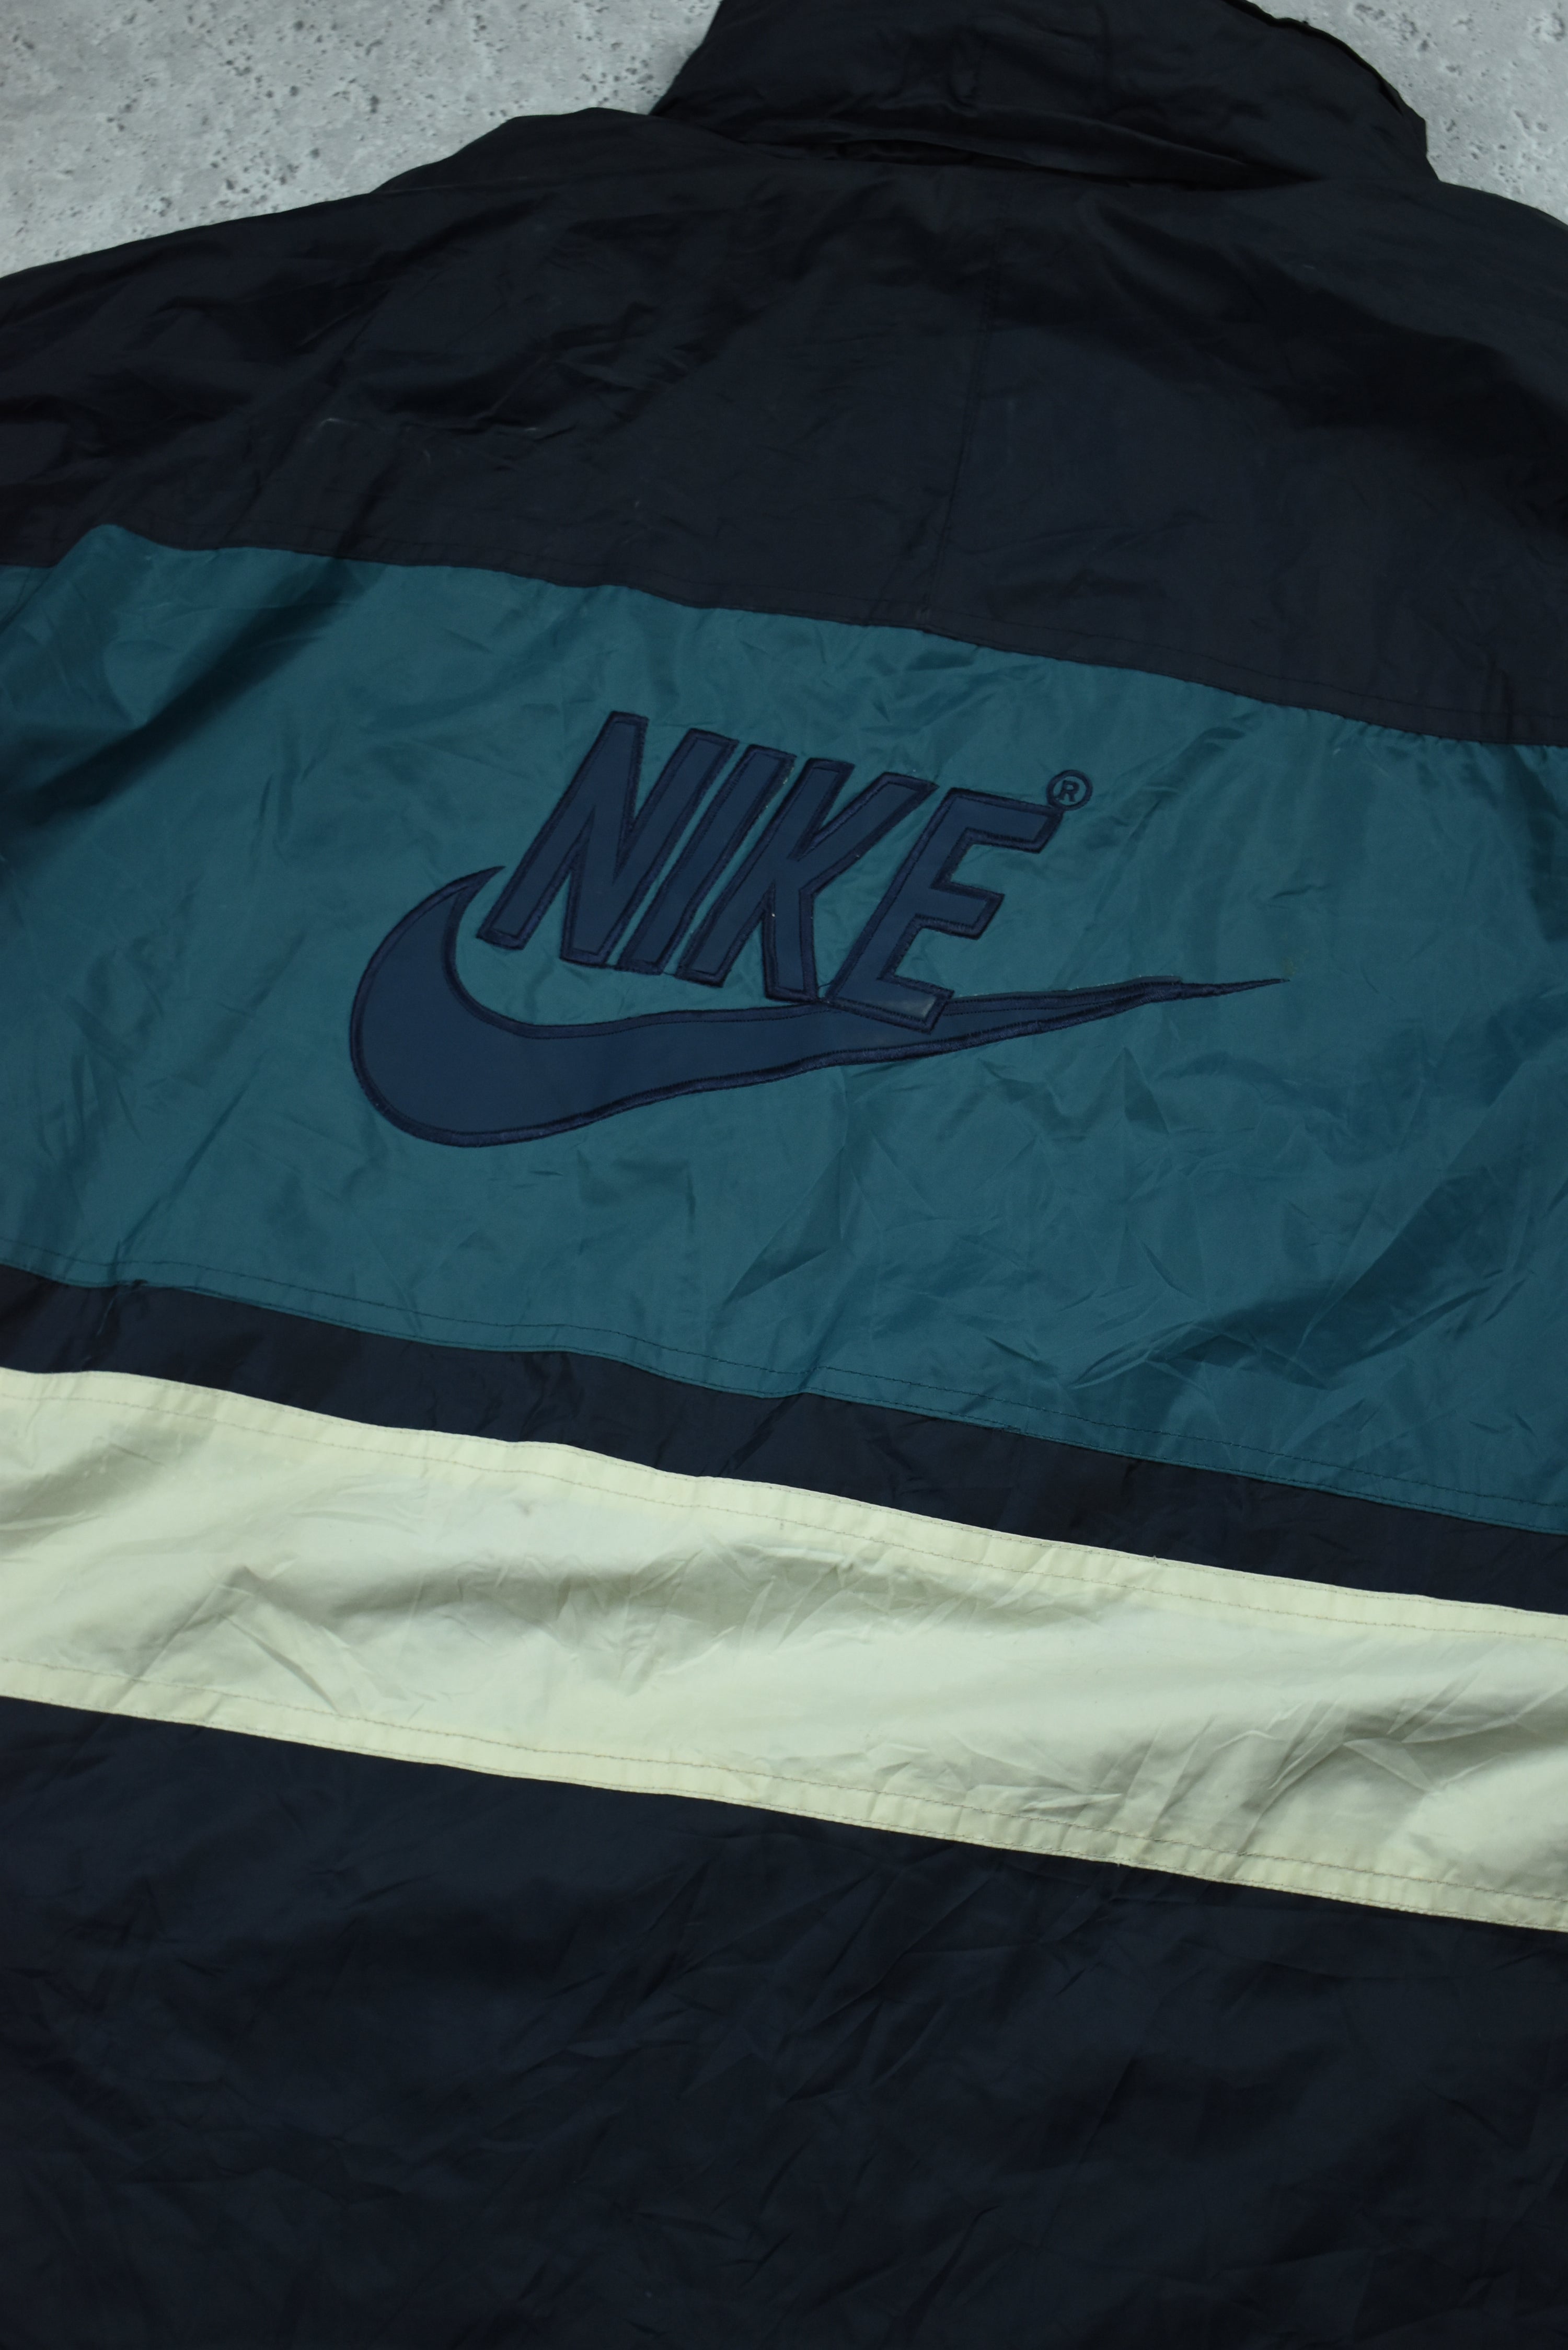 Vintage Nike Retro Embroidery Rain Jacket XXL